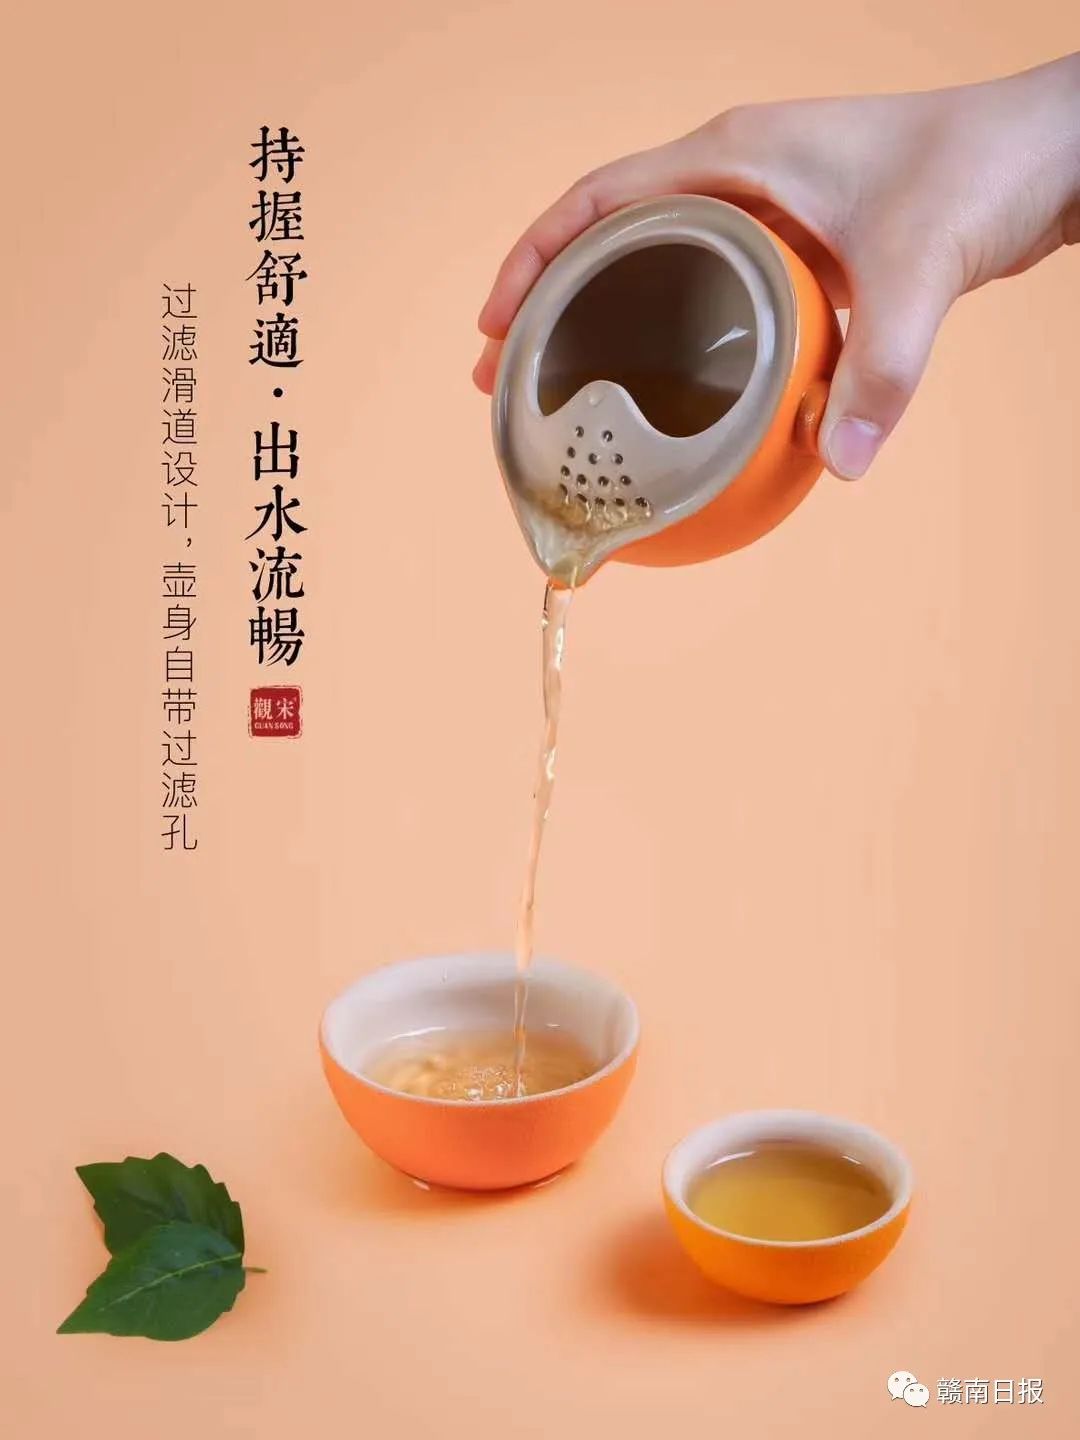 喜茶满杯橙子做法——今日茶饮免费奶茶培训 饮品配方制作教程 - 知乎